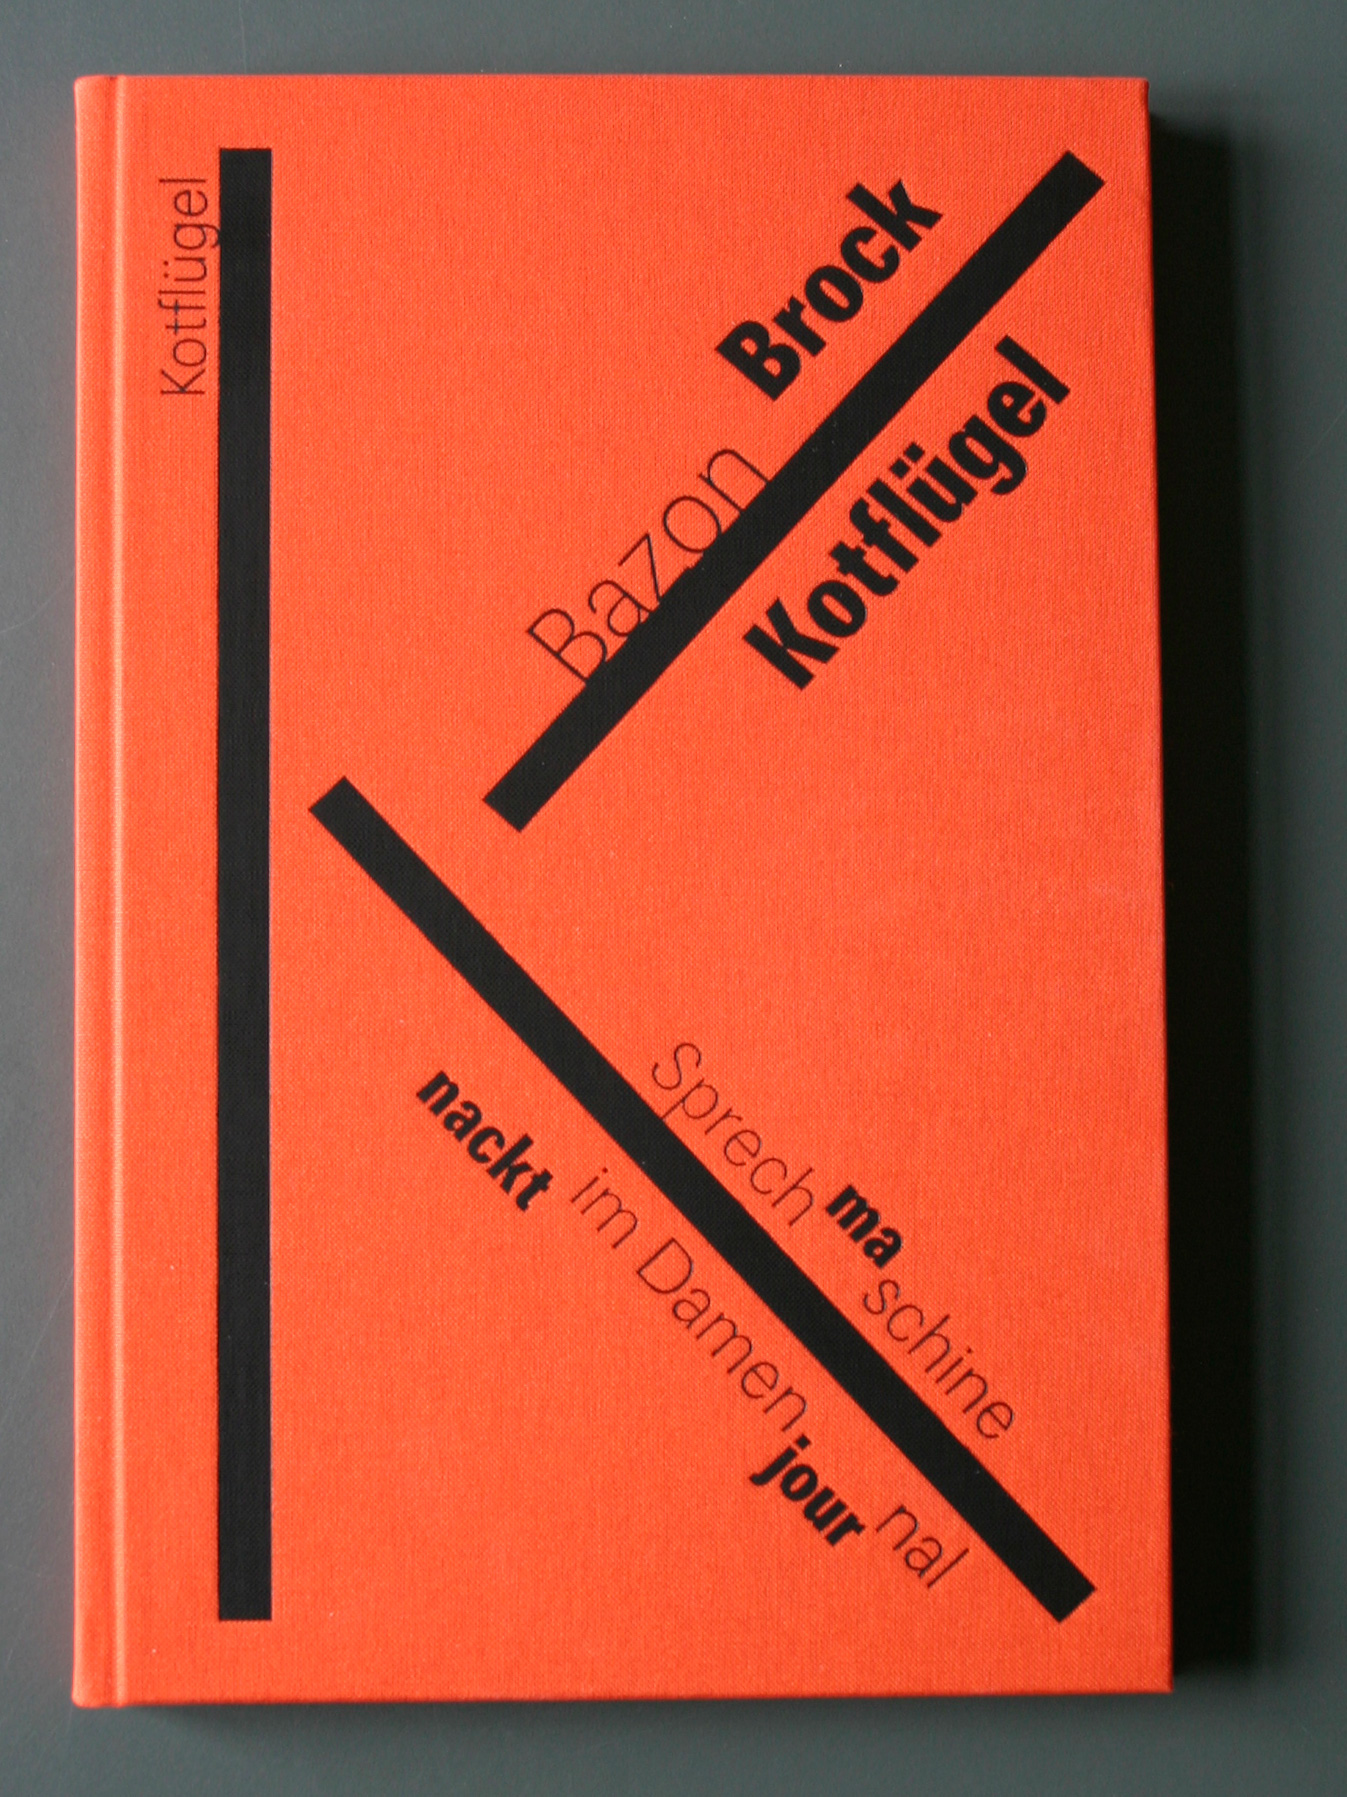 Kotflügel, Bild: Titelseite der Ausgabe 2006.